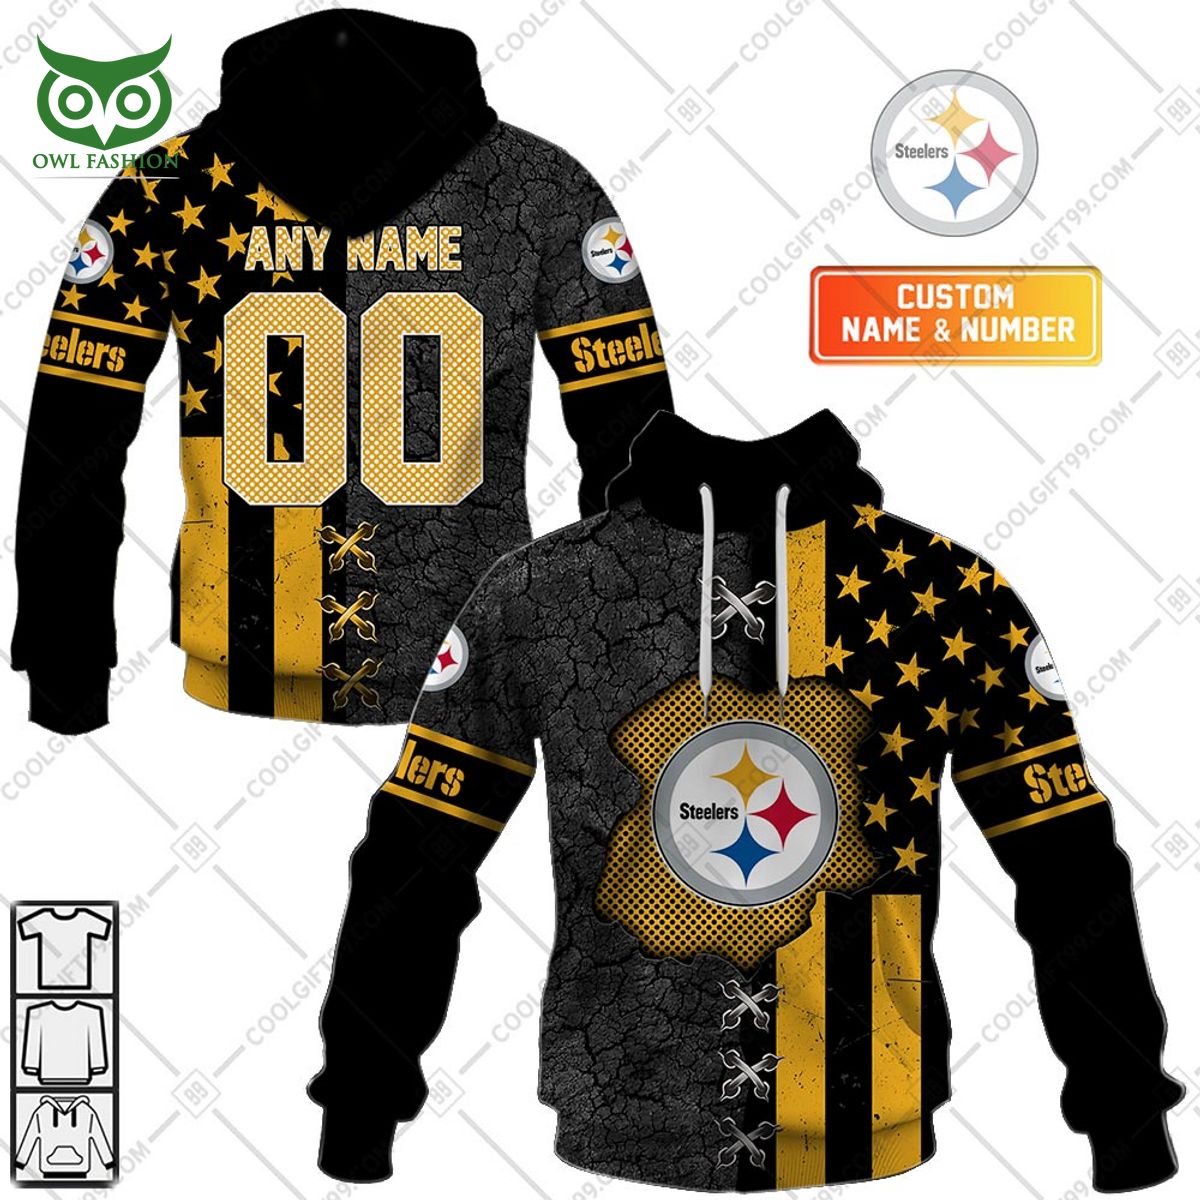 Custom Name Number Pittsburgh Steelers flag hoodie shirt printed